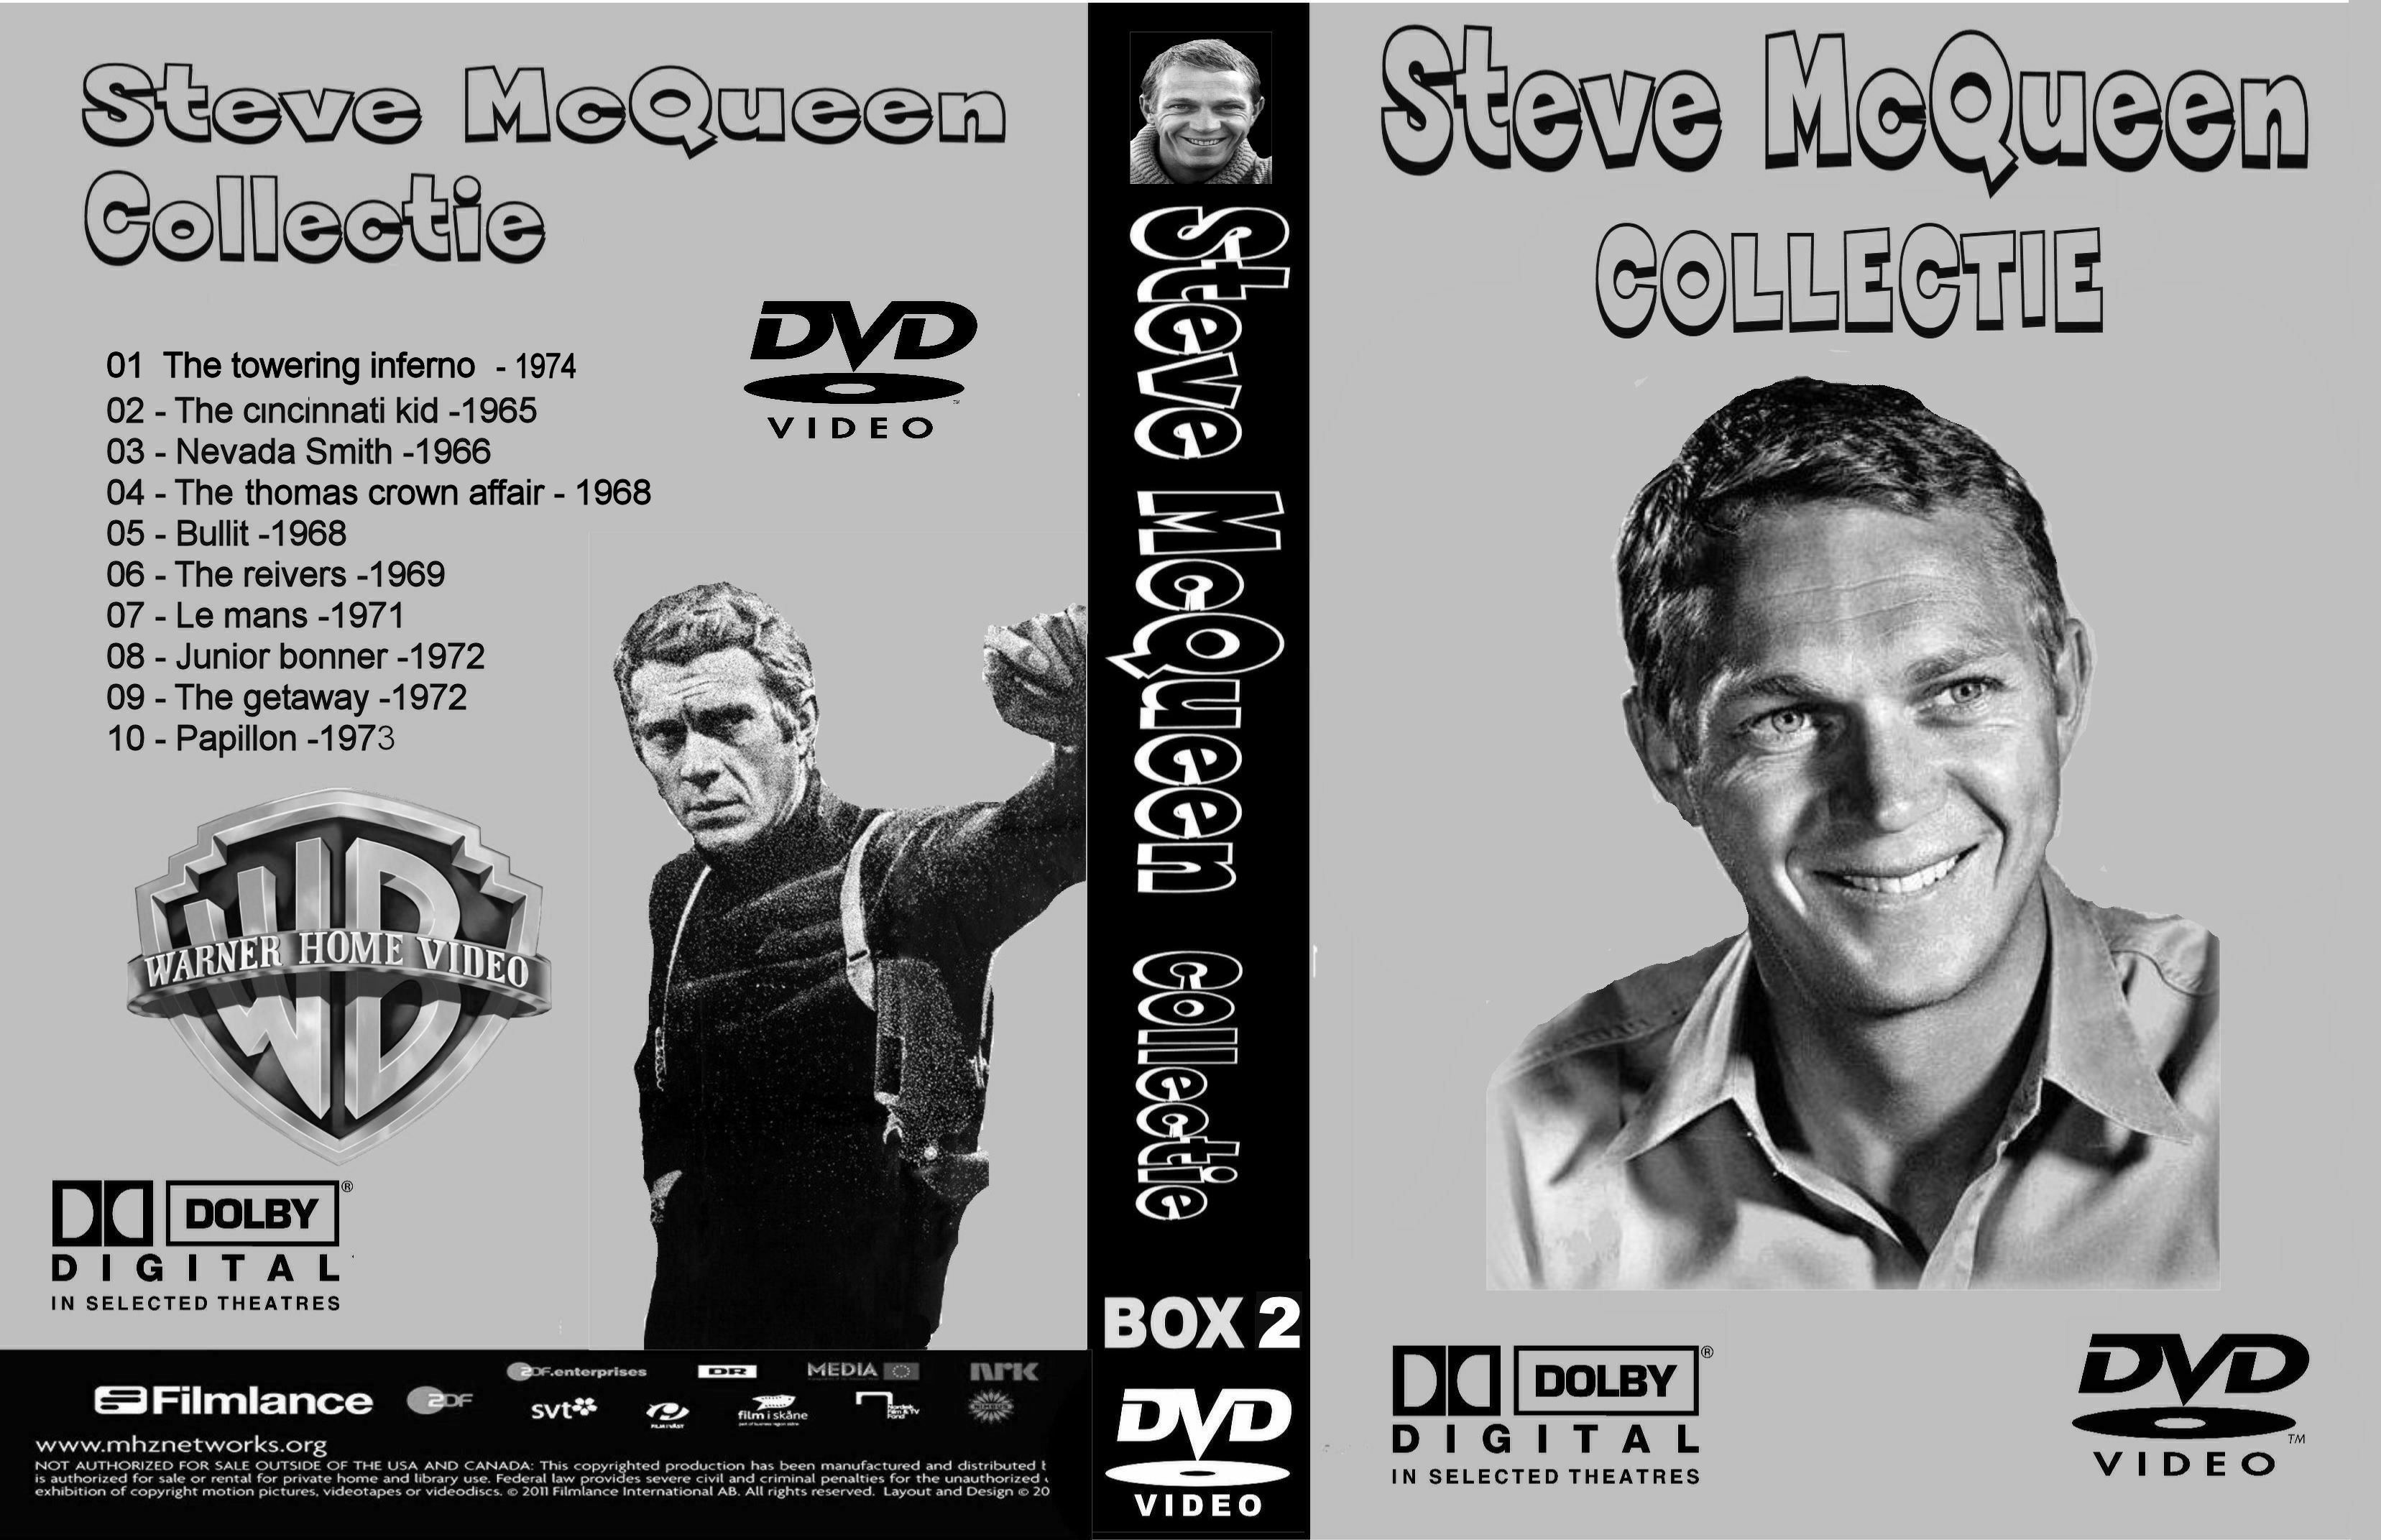 REPOST voor GIESJE Steve McQueen Collectie Box 2 DvD 9 van 10